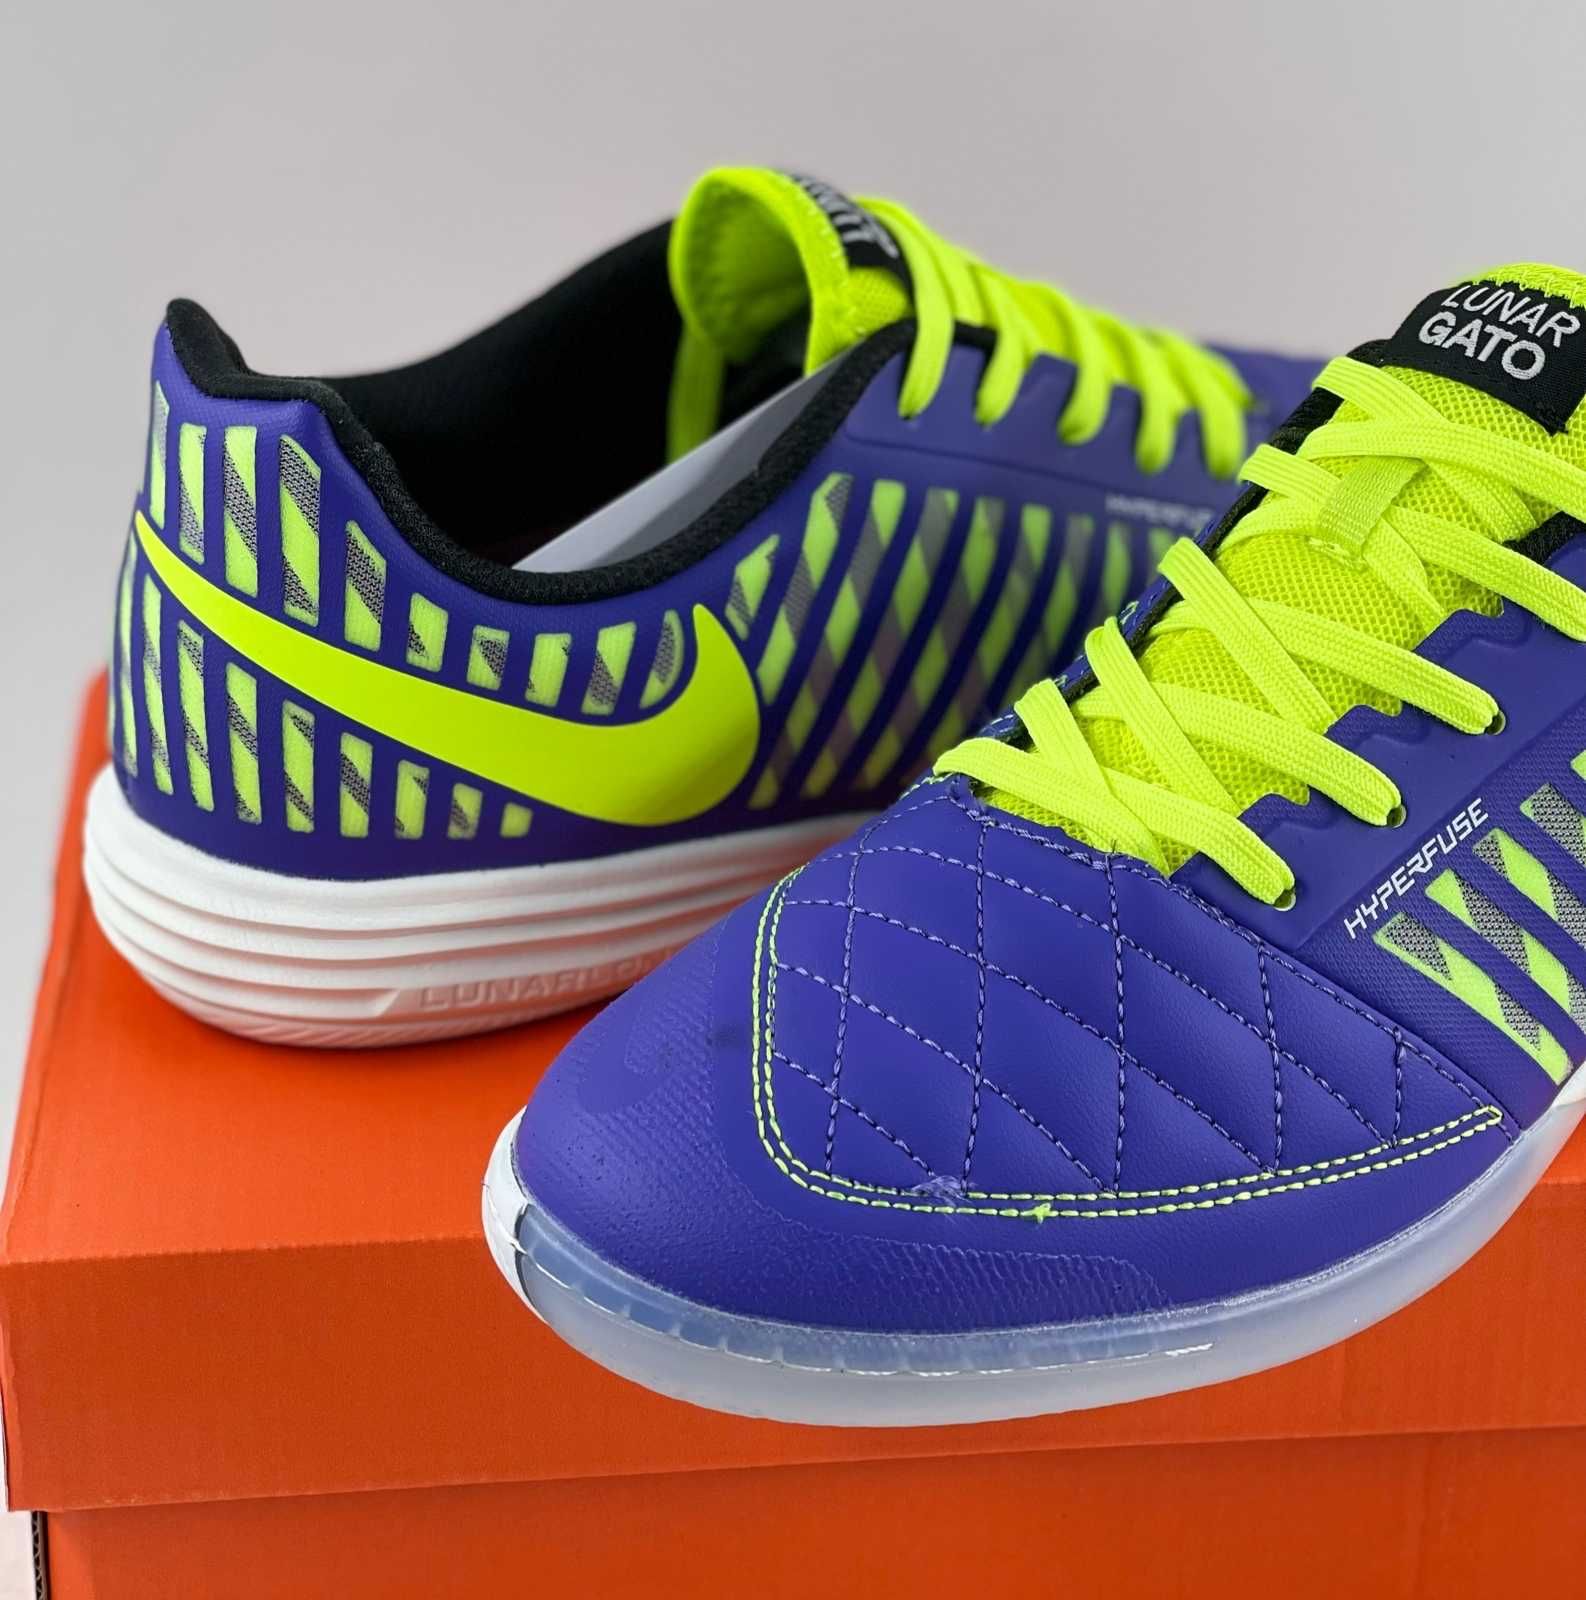 Nike Lunar Gato, обувь для футбола, футзалки, миники, зальники (0946)